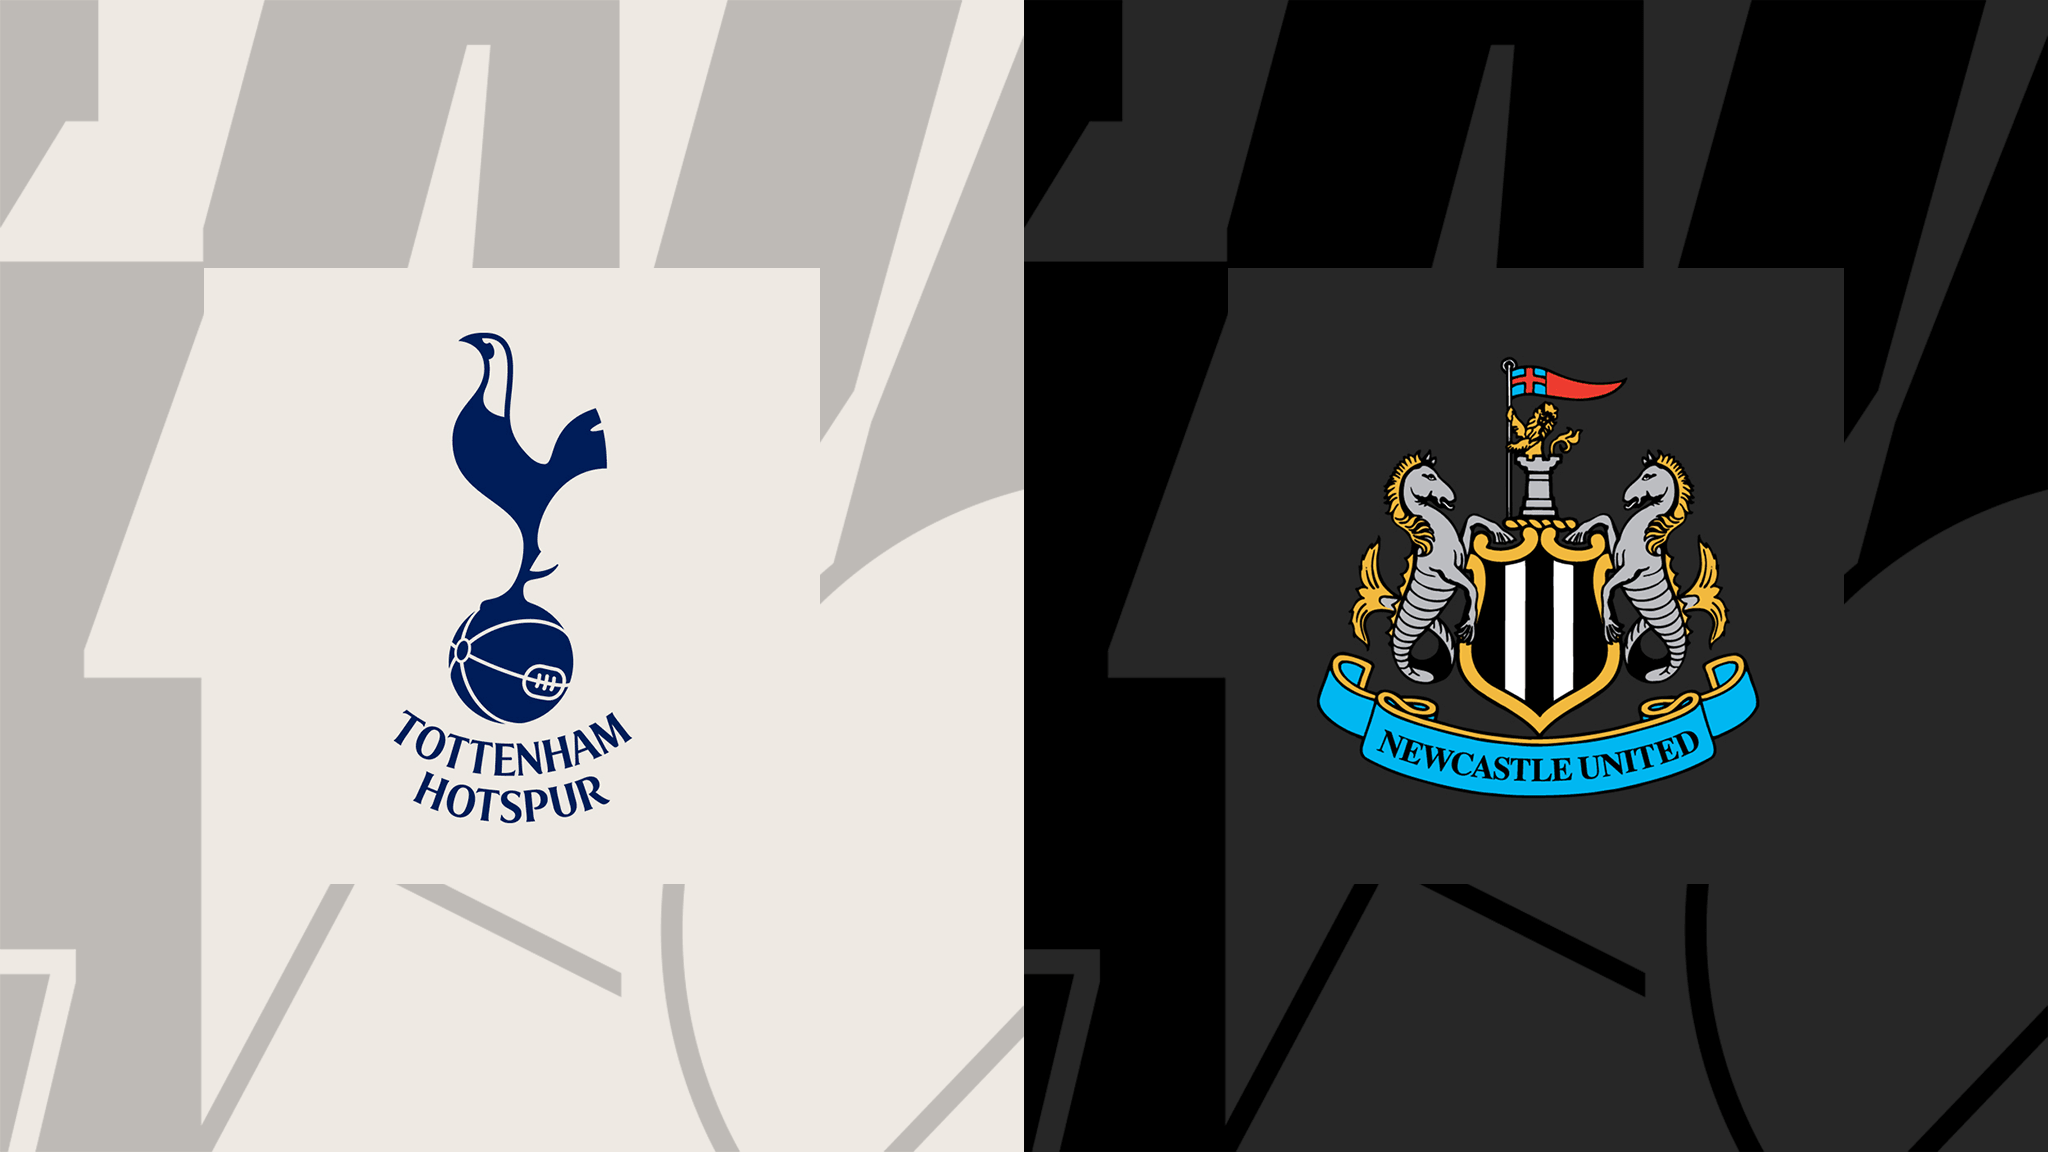  مشاهدة مباراة توتنهام هوتسبير و نيوكاسل يونايتد بث مباشر 23/10/2022 Tottenham vs Newcastle